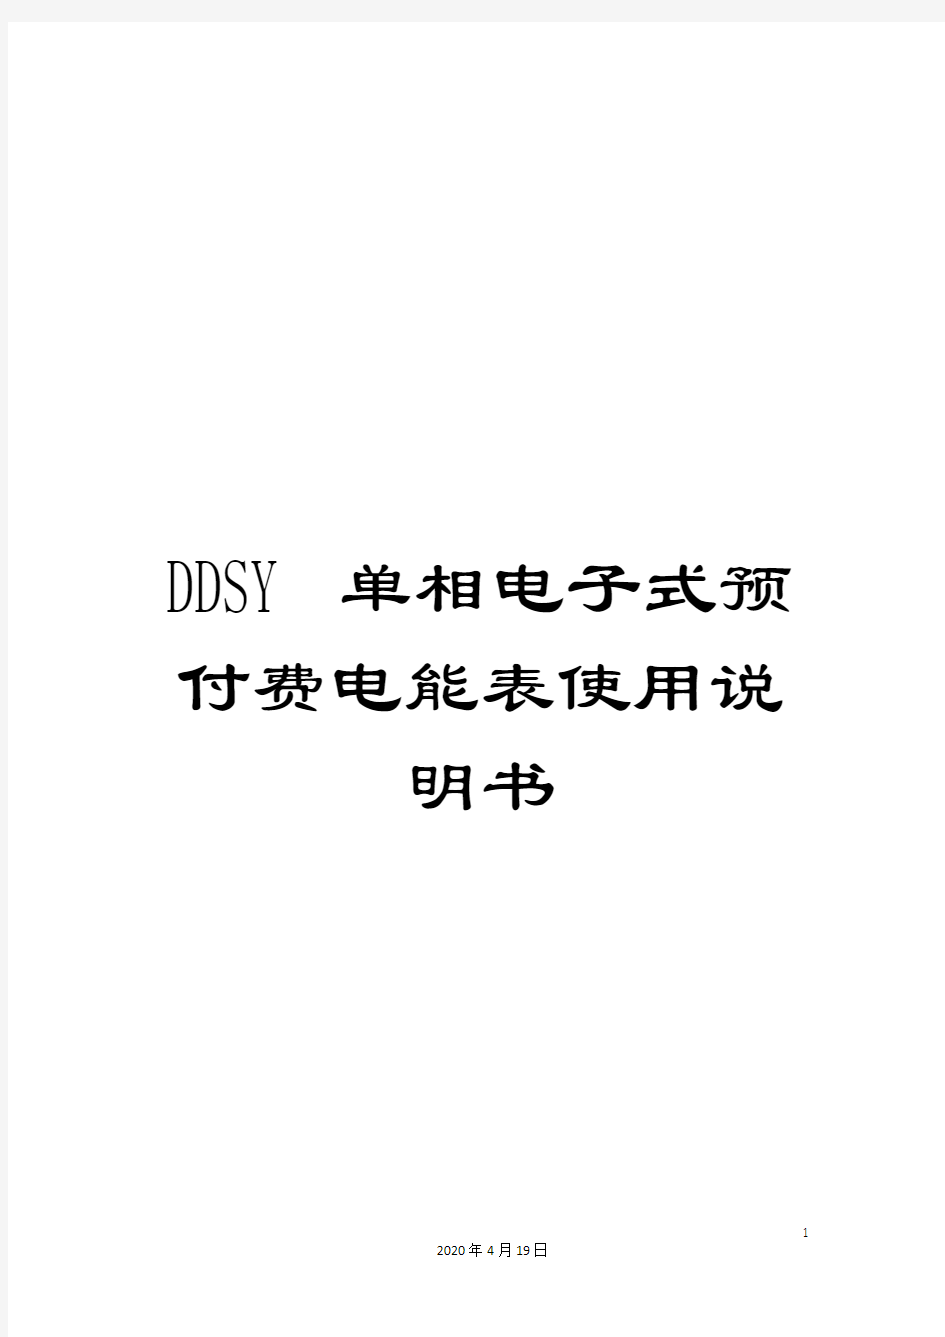 DDSY单相电子式预付费电能表使用说明书